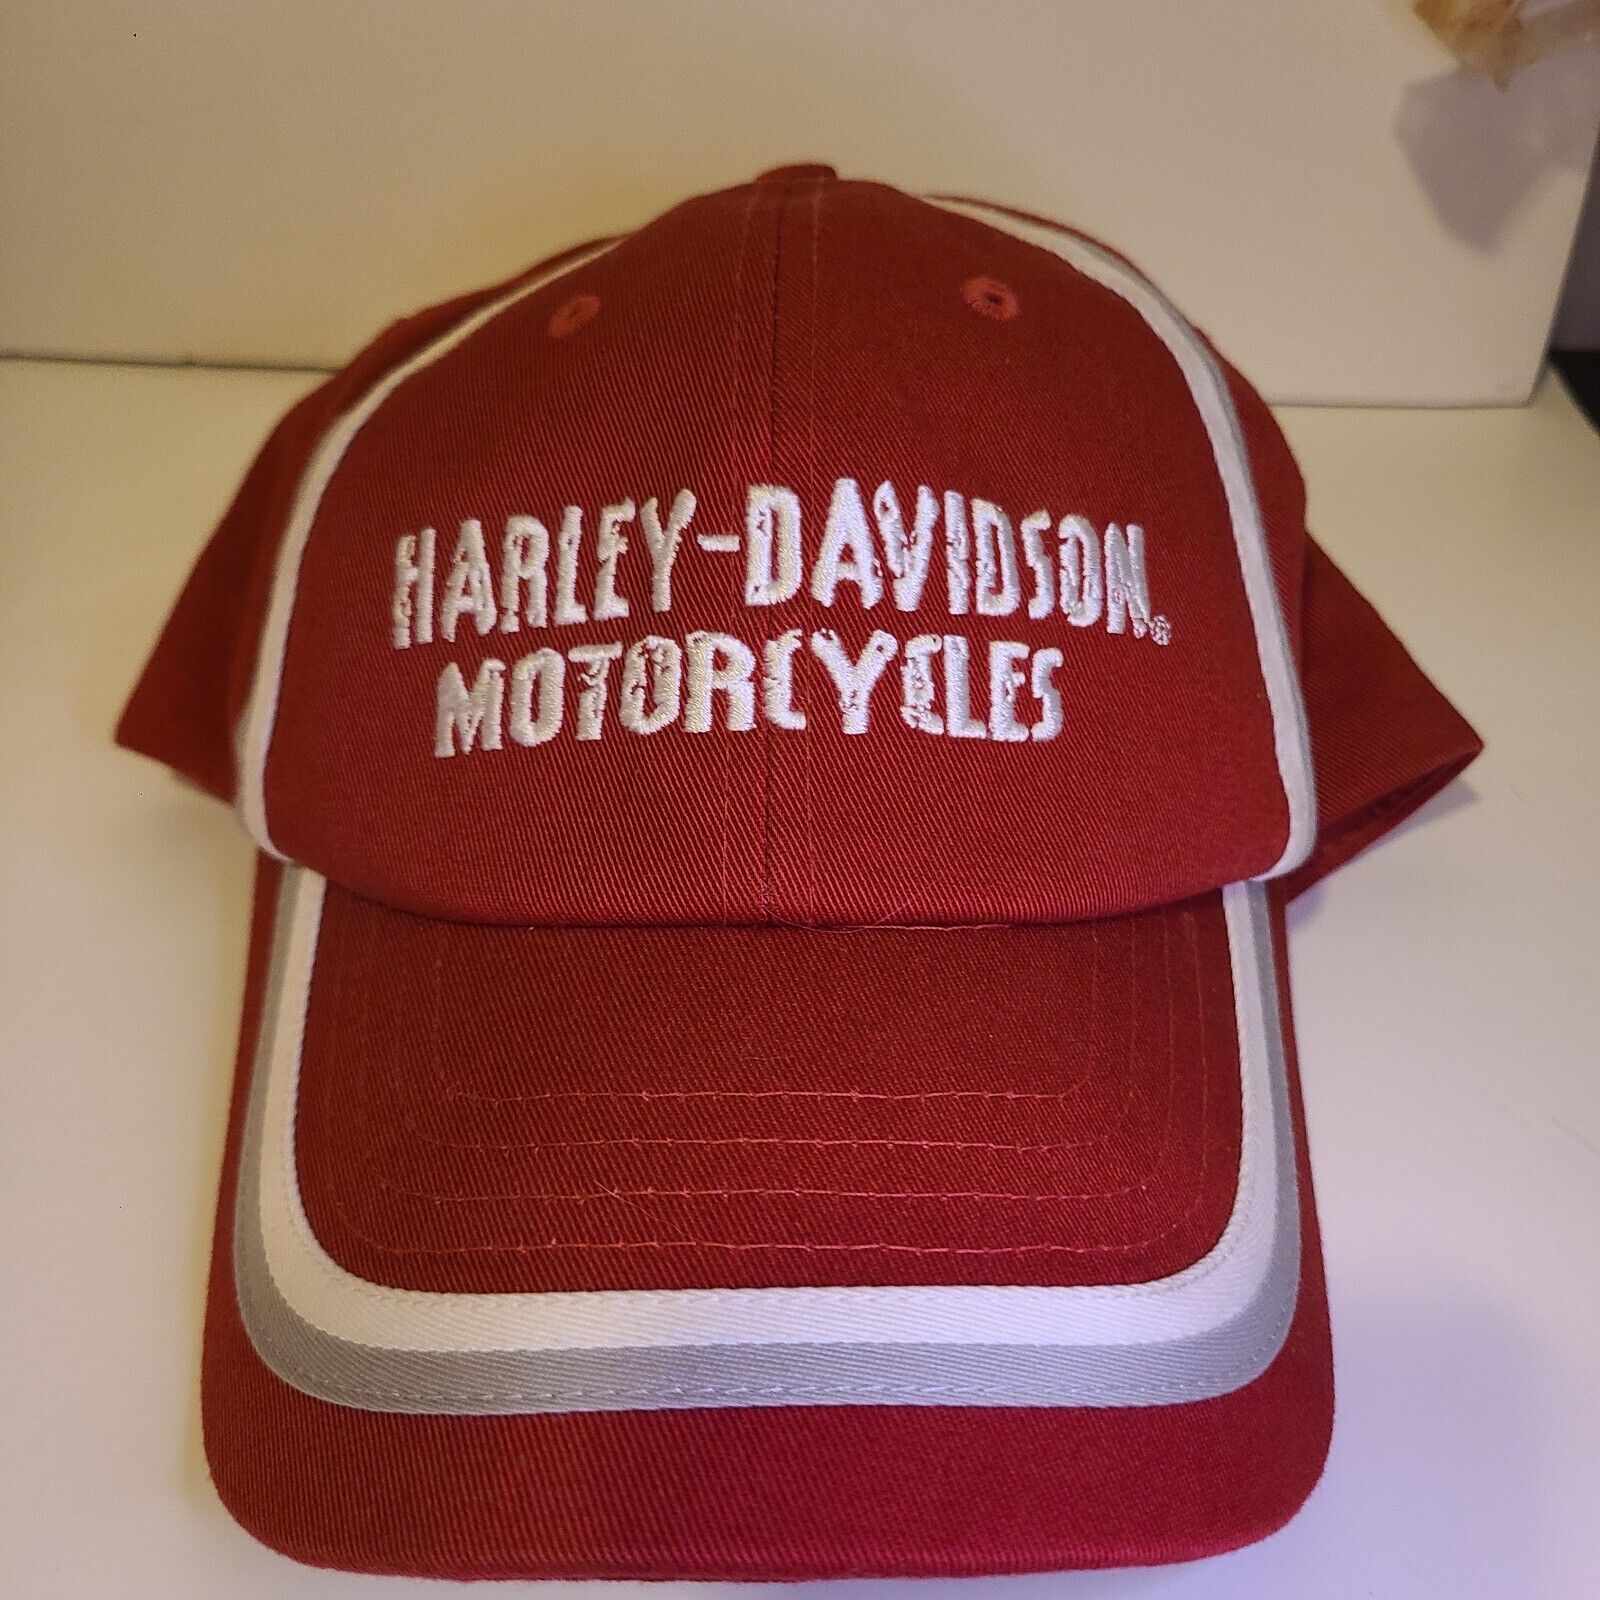 Vintage Harley Davidson cap hat embroidery